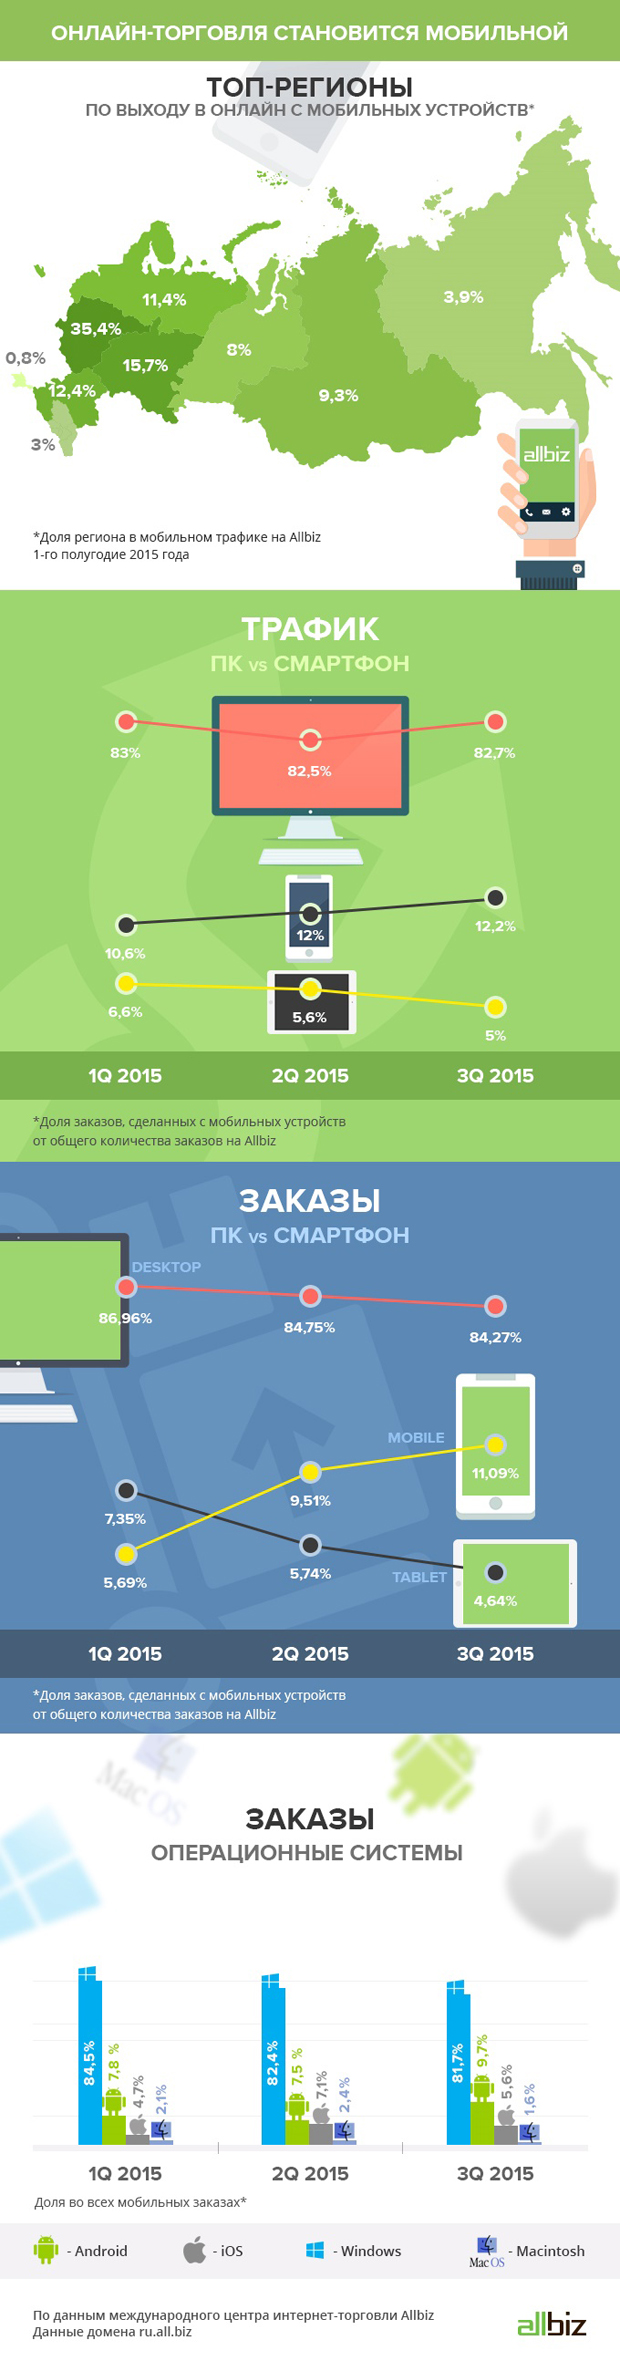 Инфографика Allbiz мобильная коммерция в сегменте B2B торговли в III квартале 2015 года